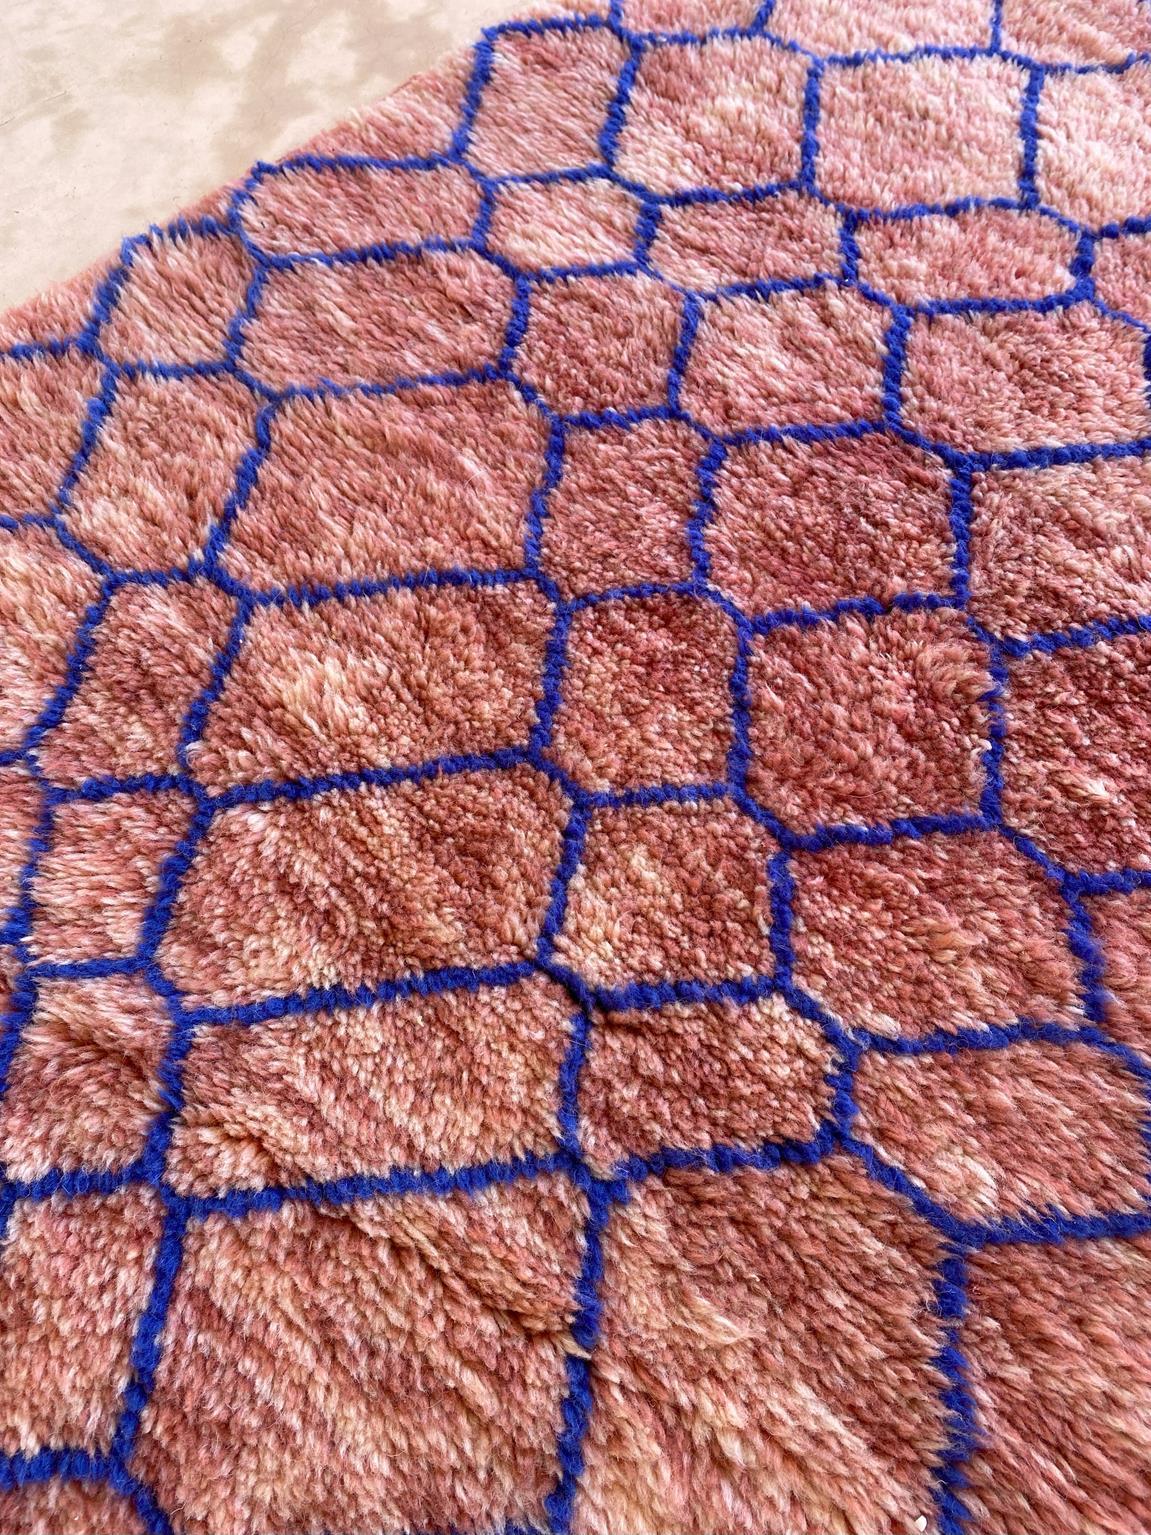 Modern Moroccan wool Mrirt runner rug - Pink/blue - 3.1x13.4feet / 95x408cm For Sale 4